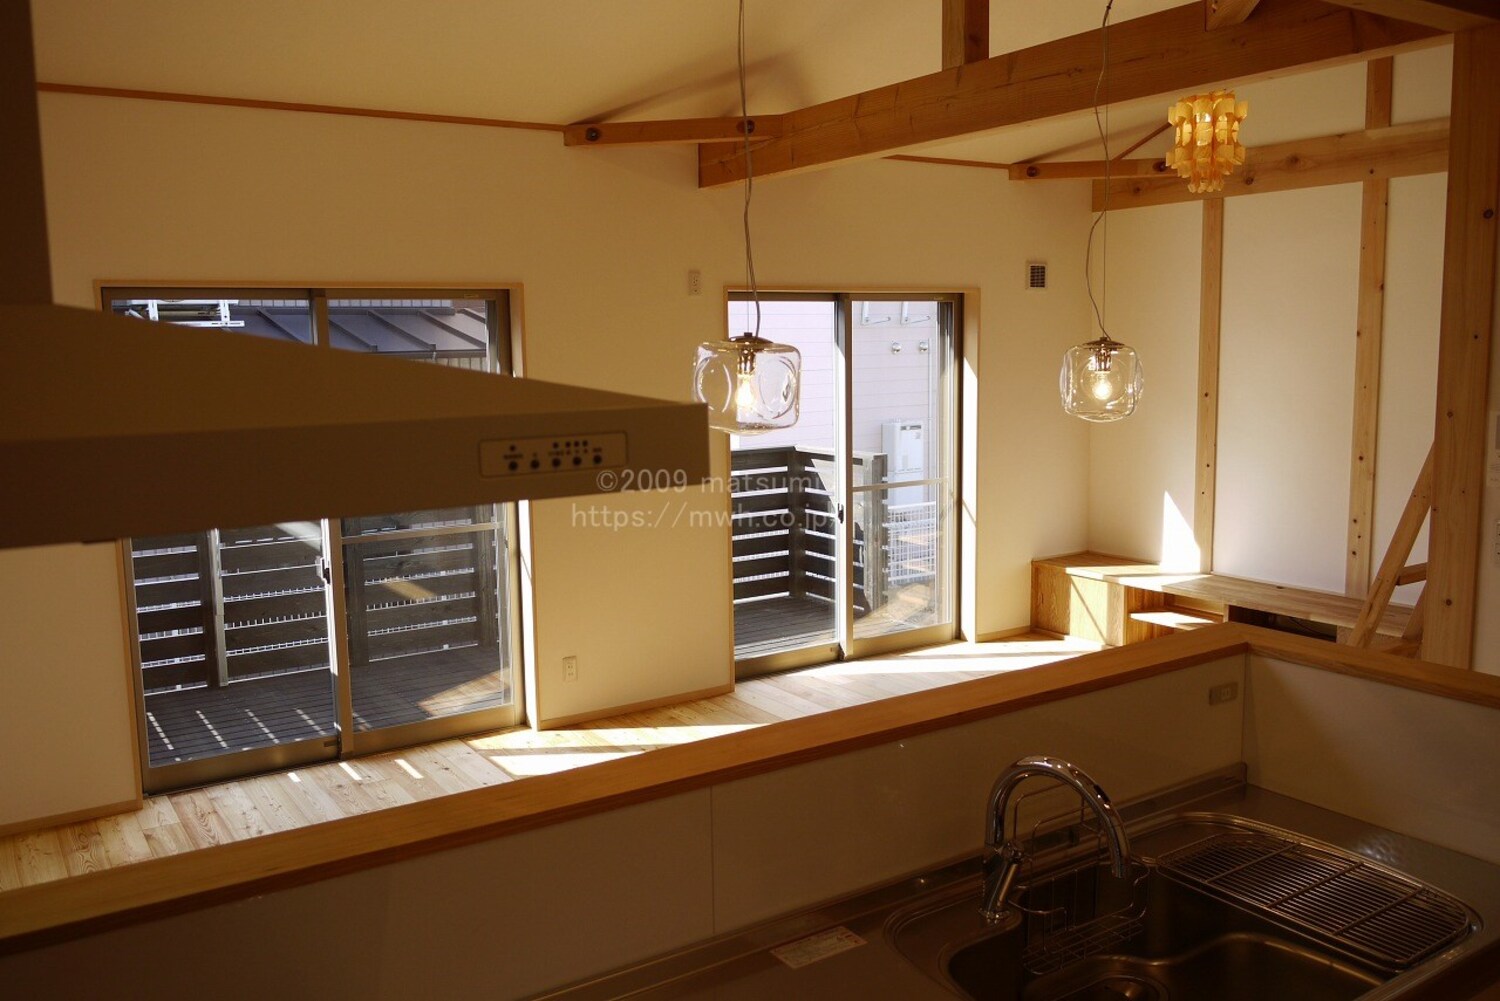 【注文住宅】TERANISHI NEW　HOUSE『マツミ大工の寺西君が自宅を建てました』